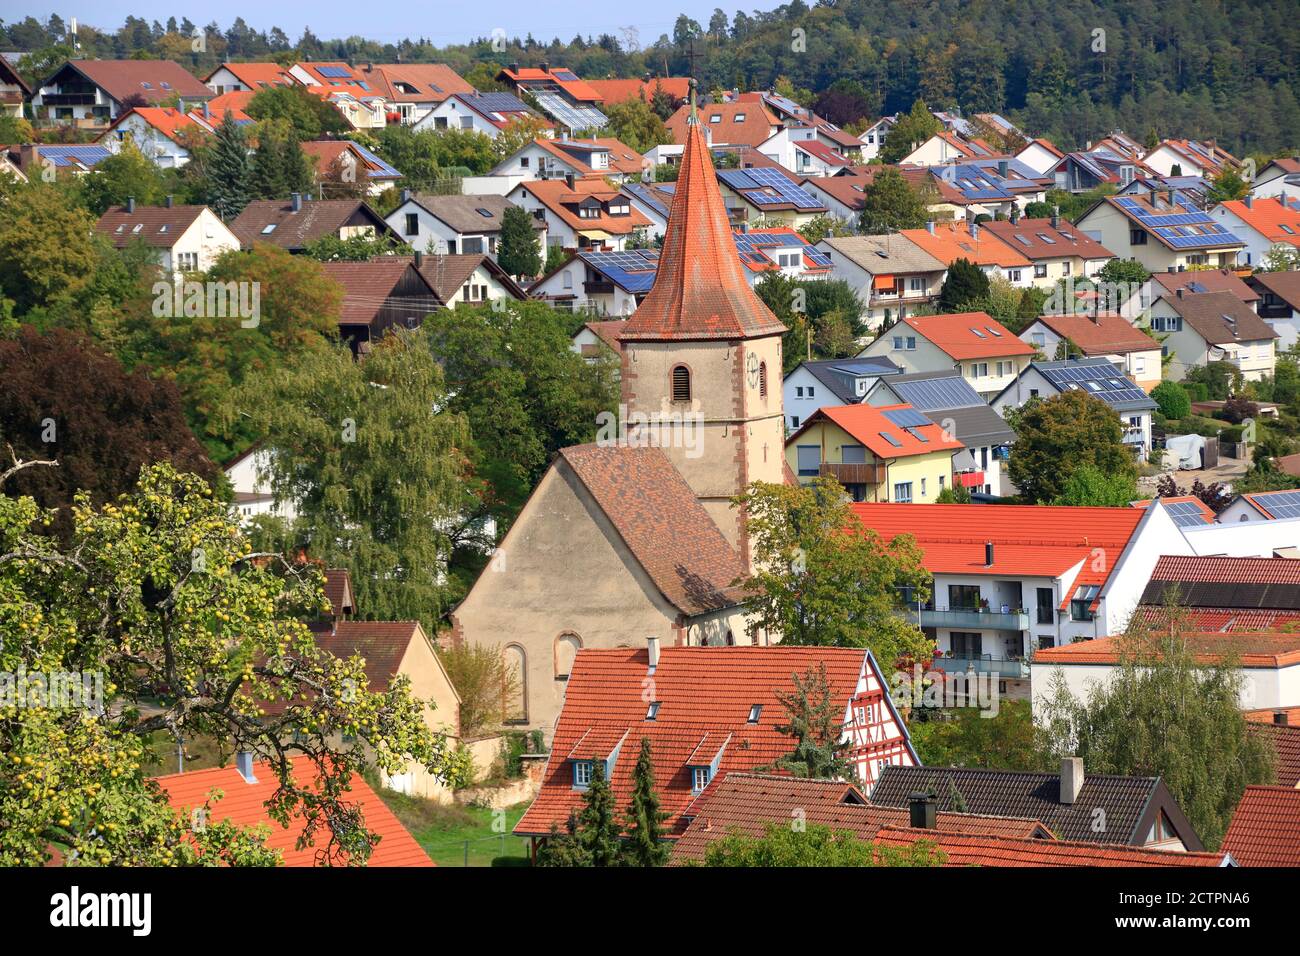 Blick auf die Stadt Simmozheim im Stadtteil Calw Stockfoto